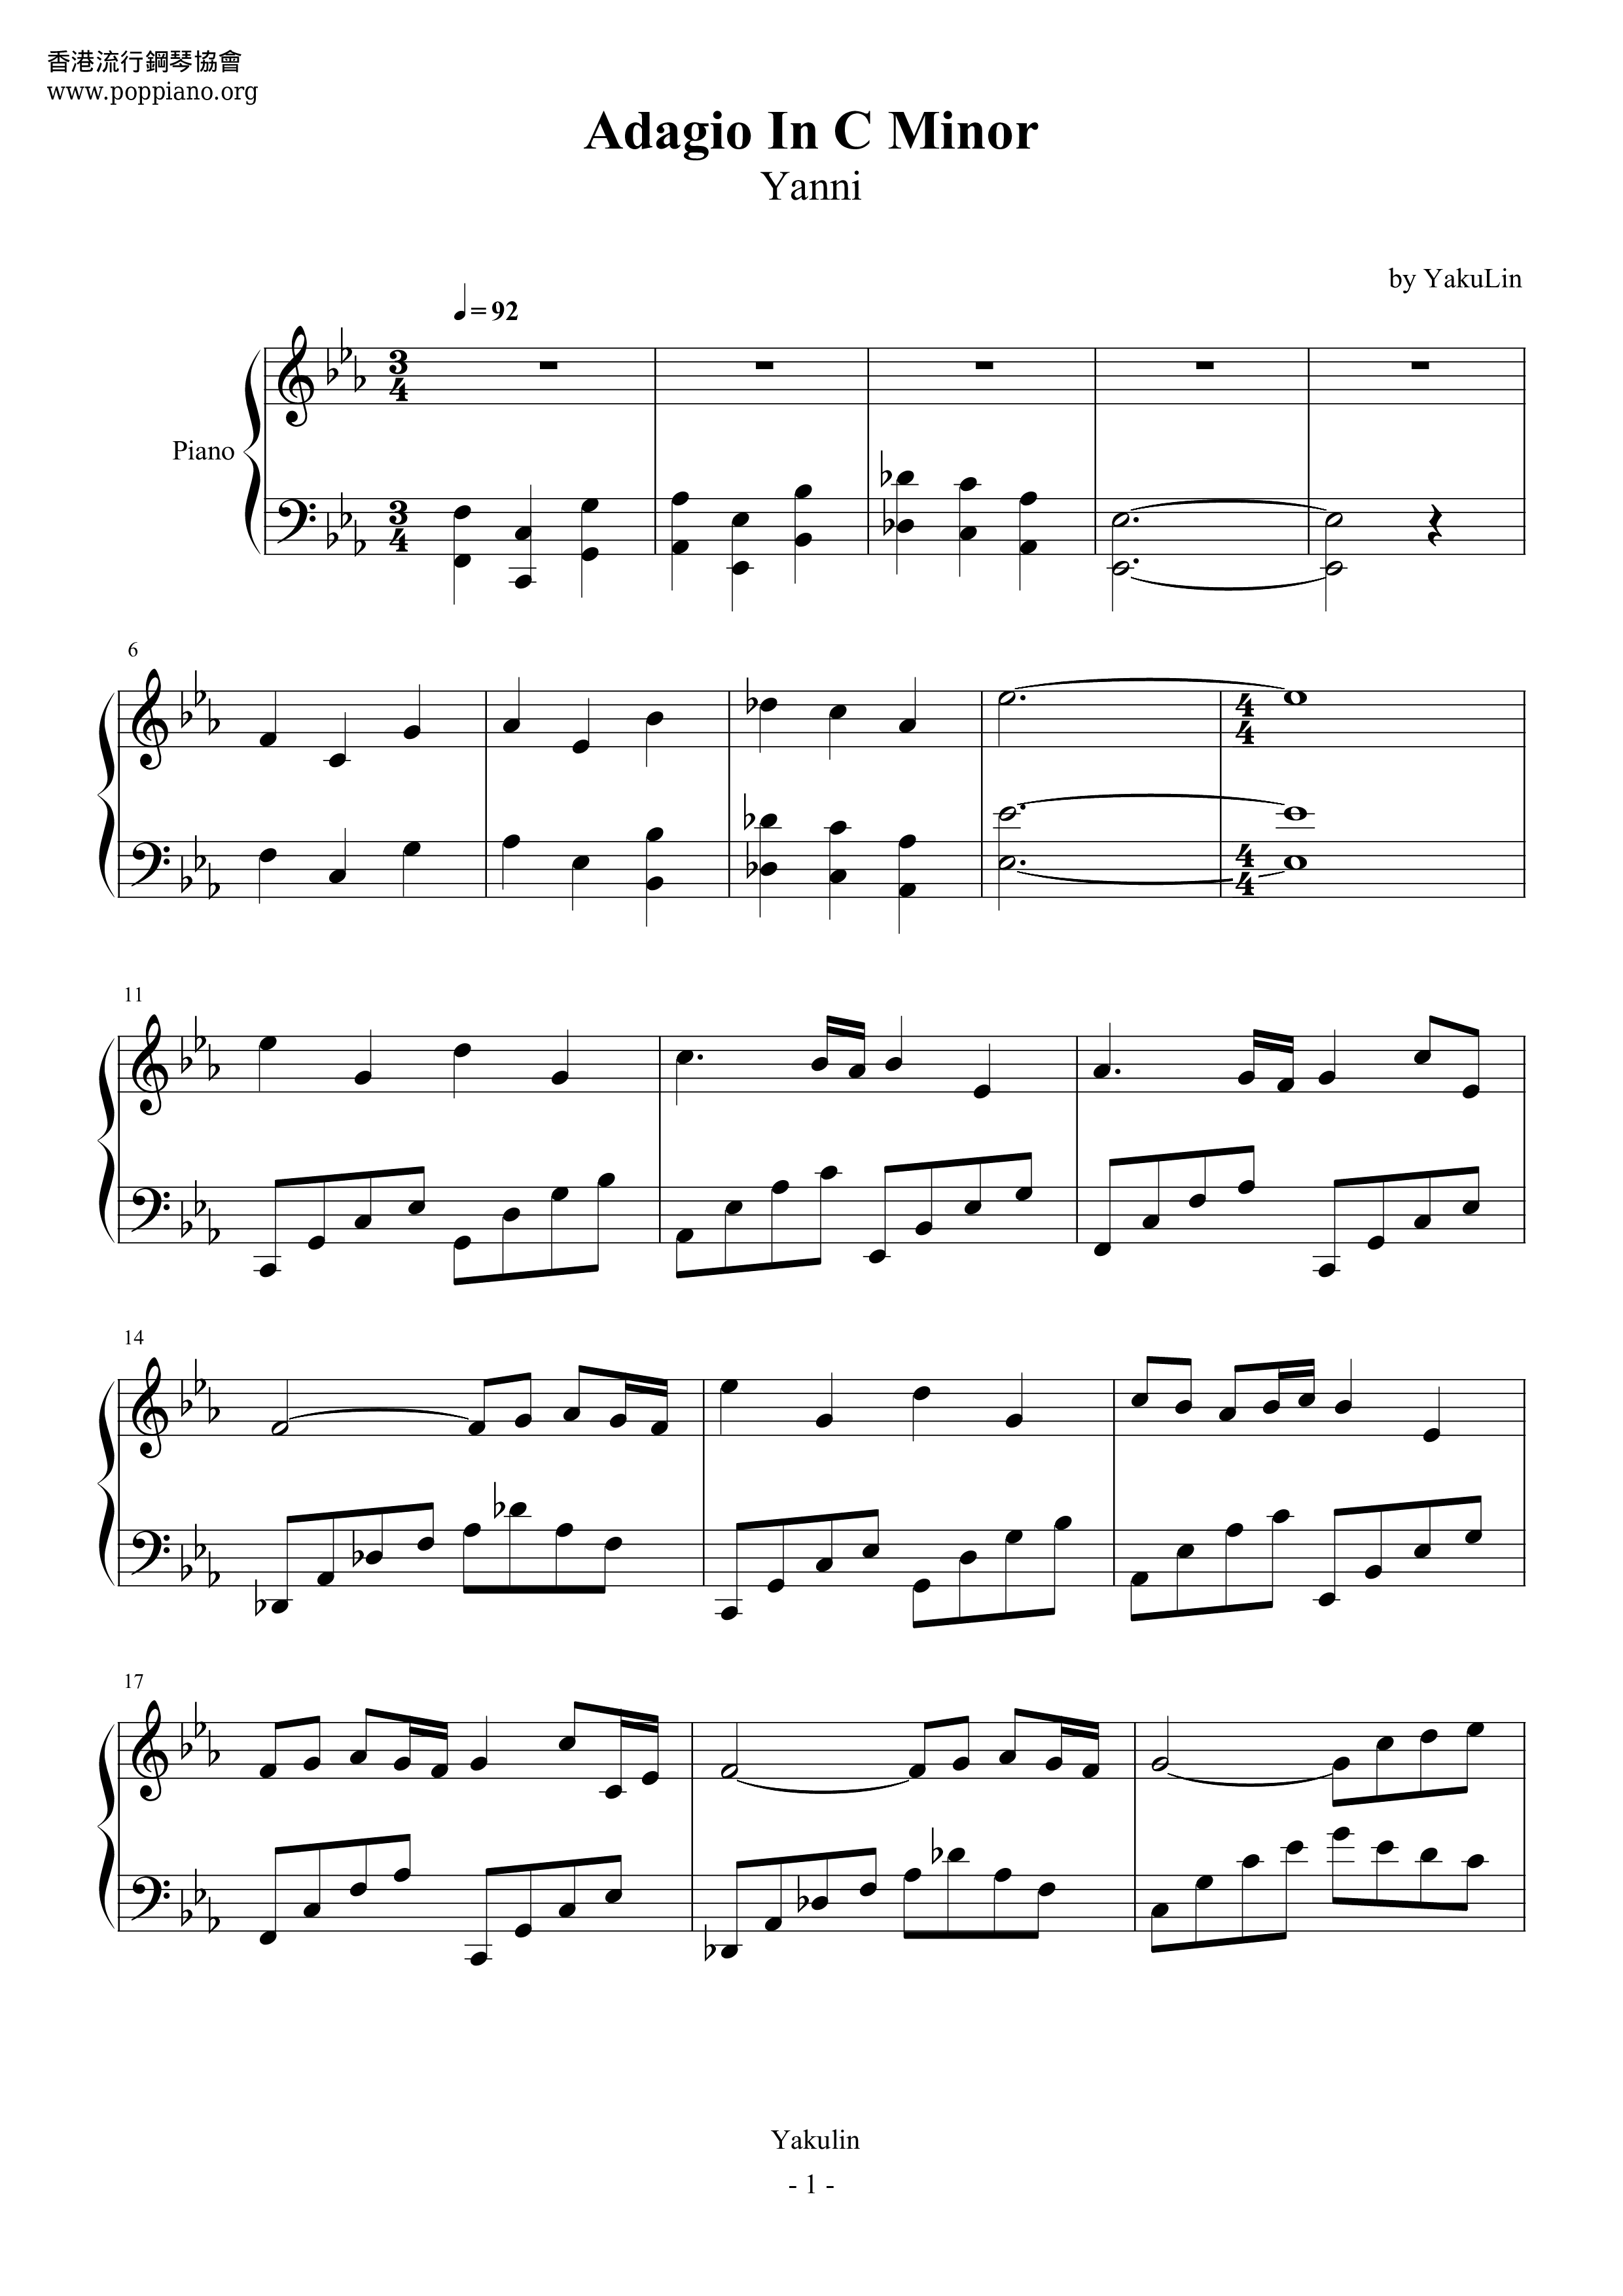 Adagio In C Minor Score